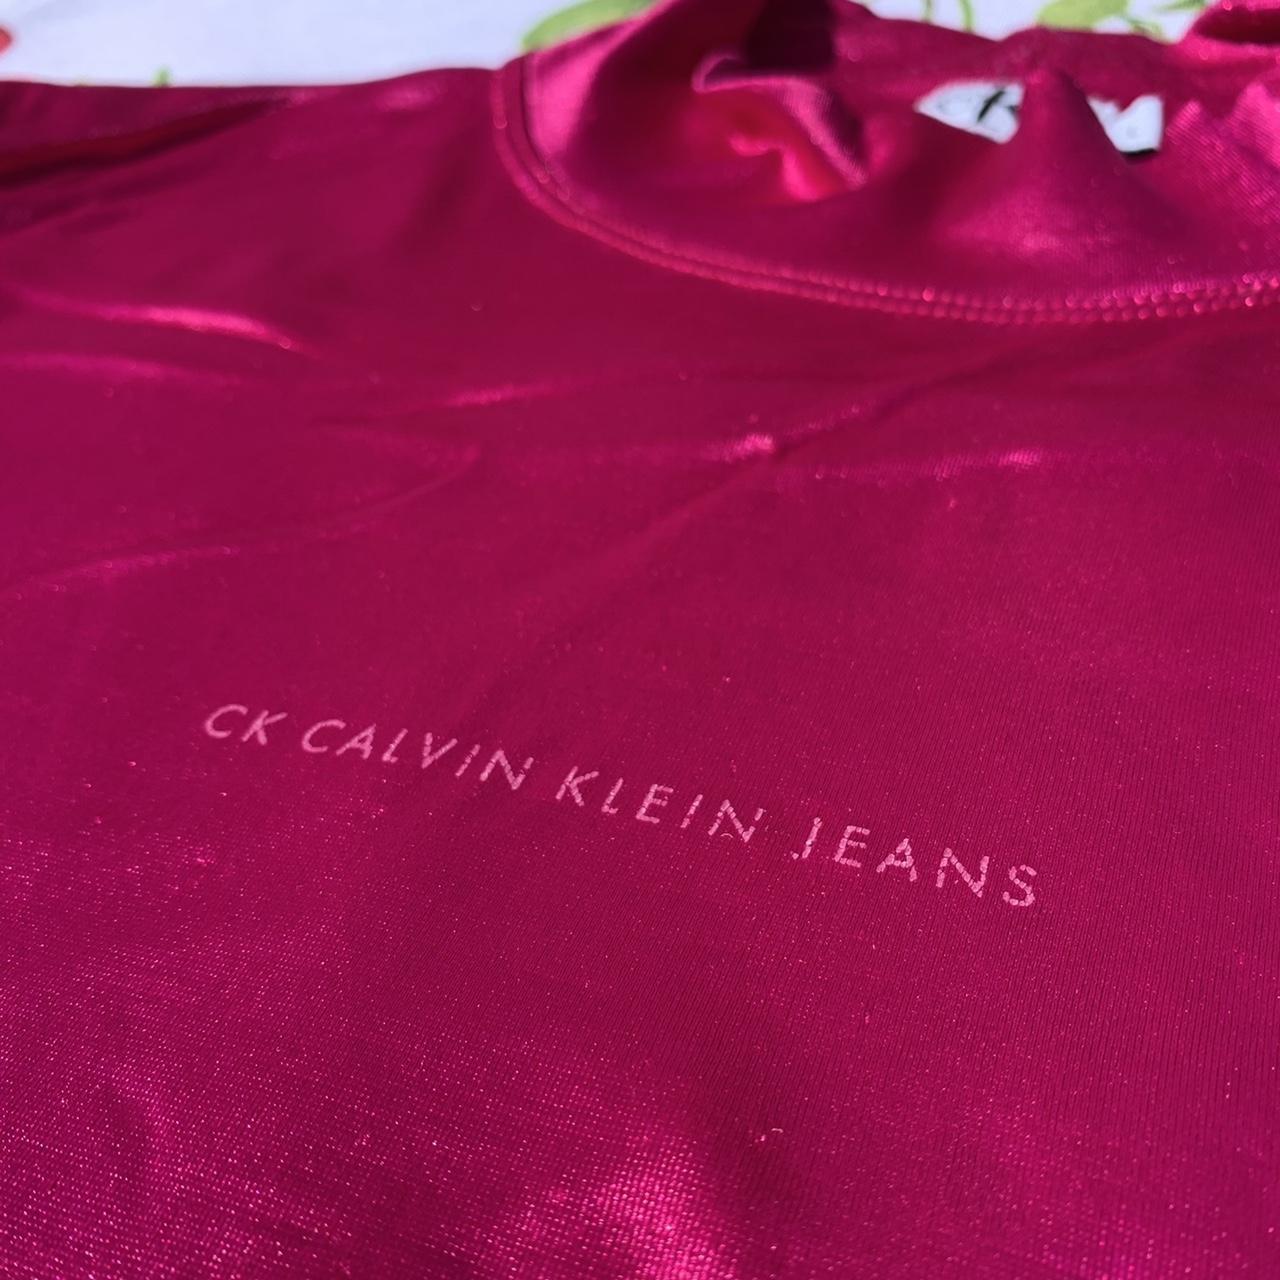 CK Calvin Klein Women's Pink Shirt (2)